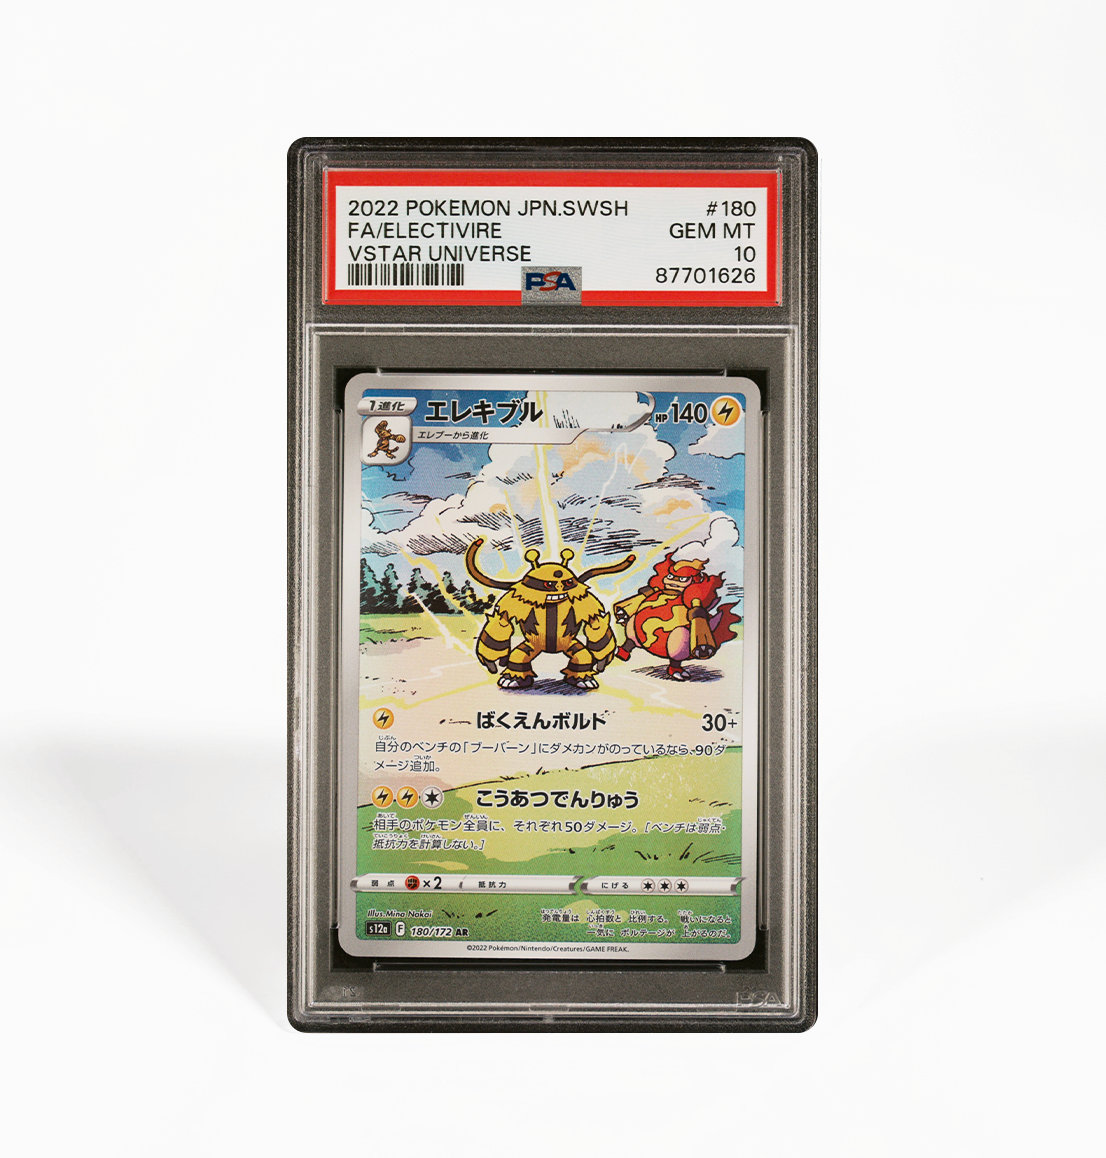 PSA 10 Electivire #180 VStar Universe s12a Japanese Pokemon card